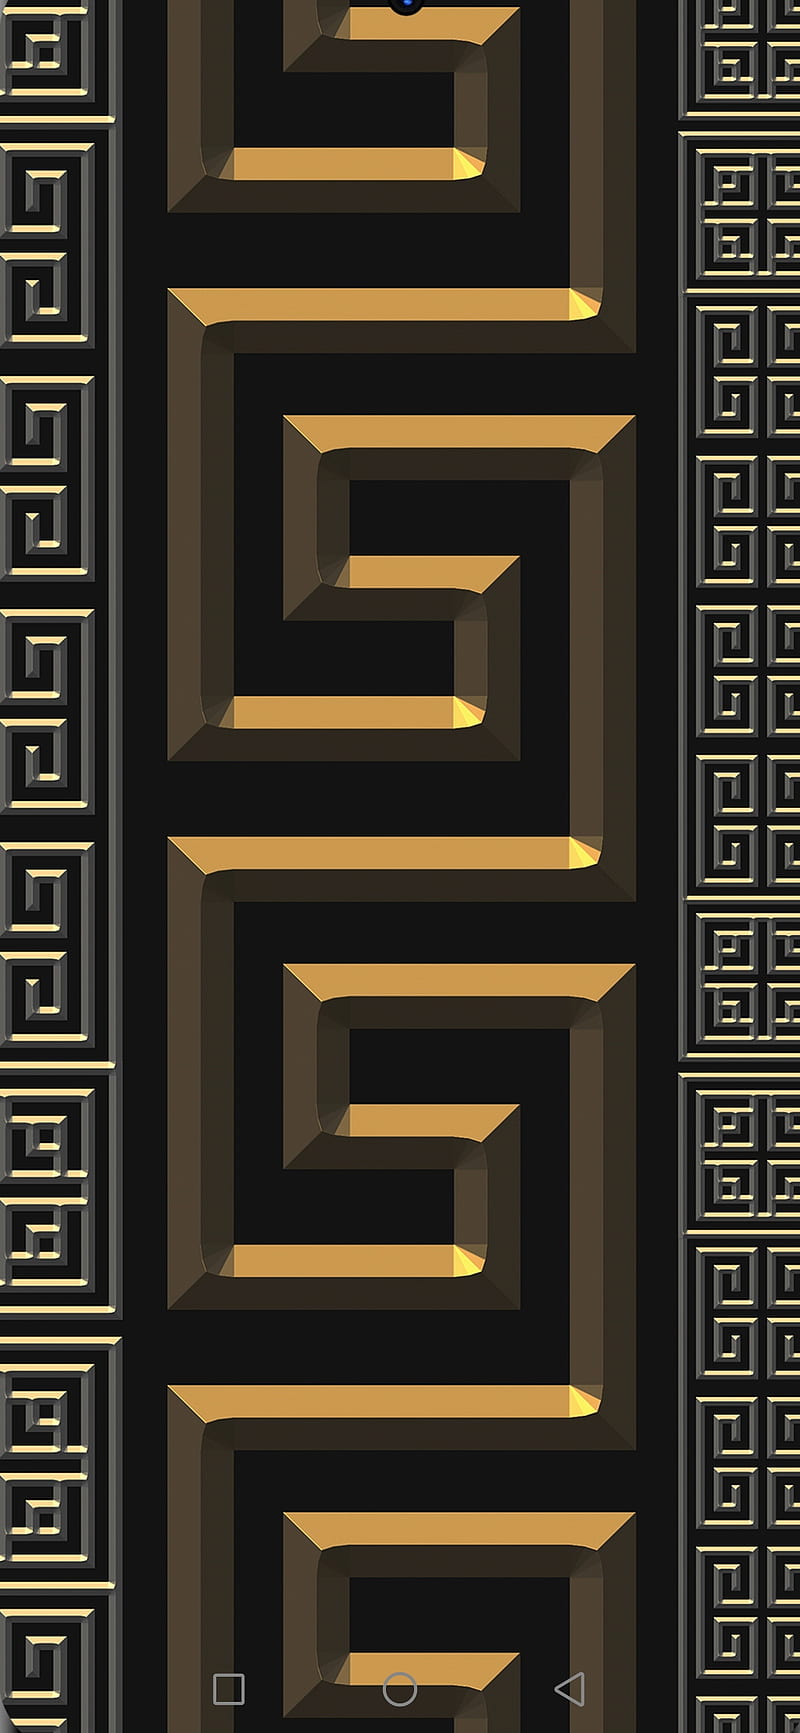 gold versace logo border